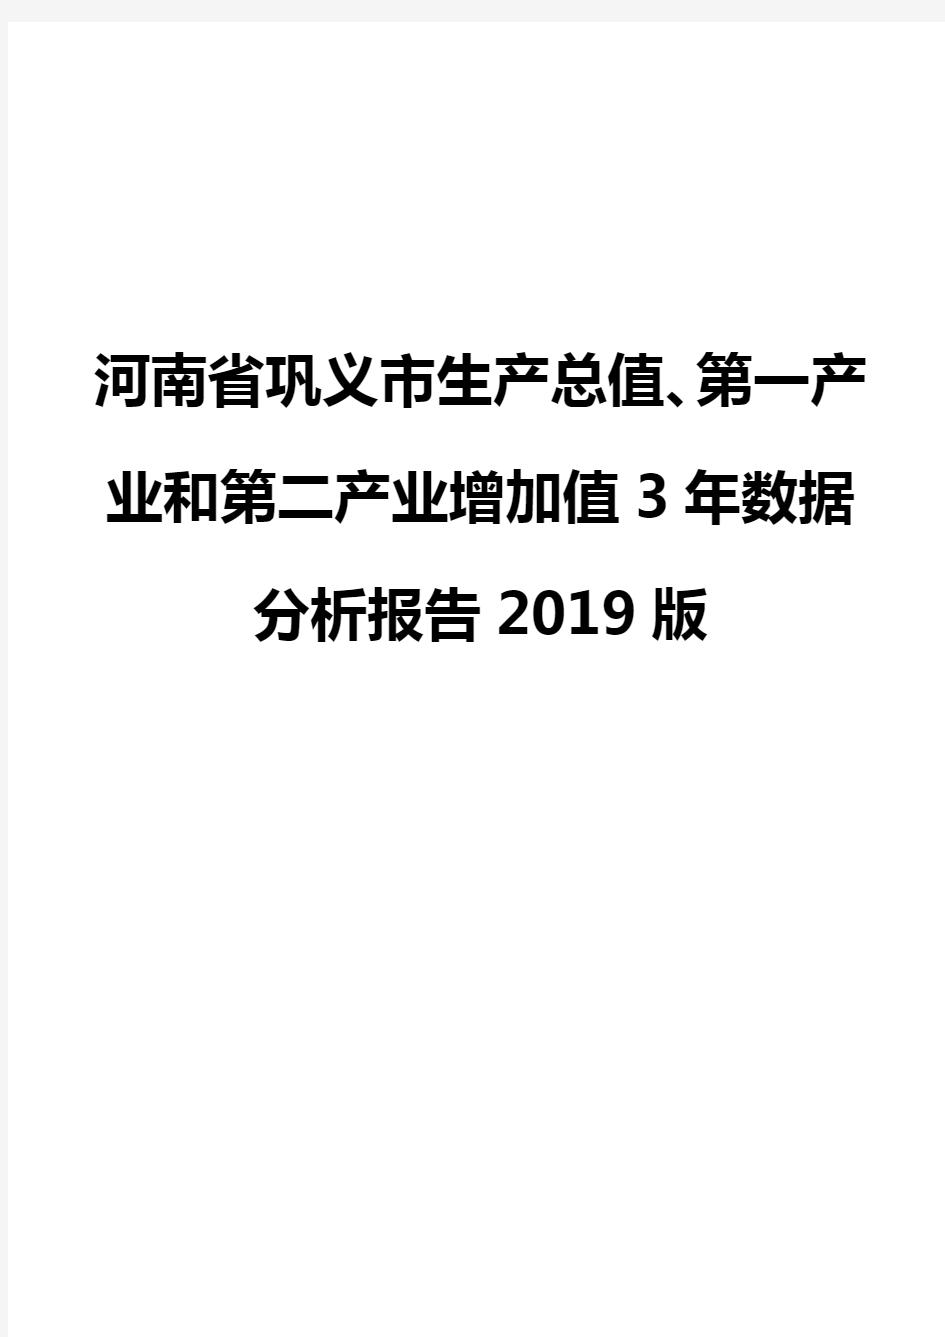 河南省巩义市生产总值、第一产业和第二产业增加值3年数据分析报告2019版